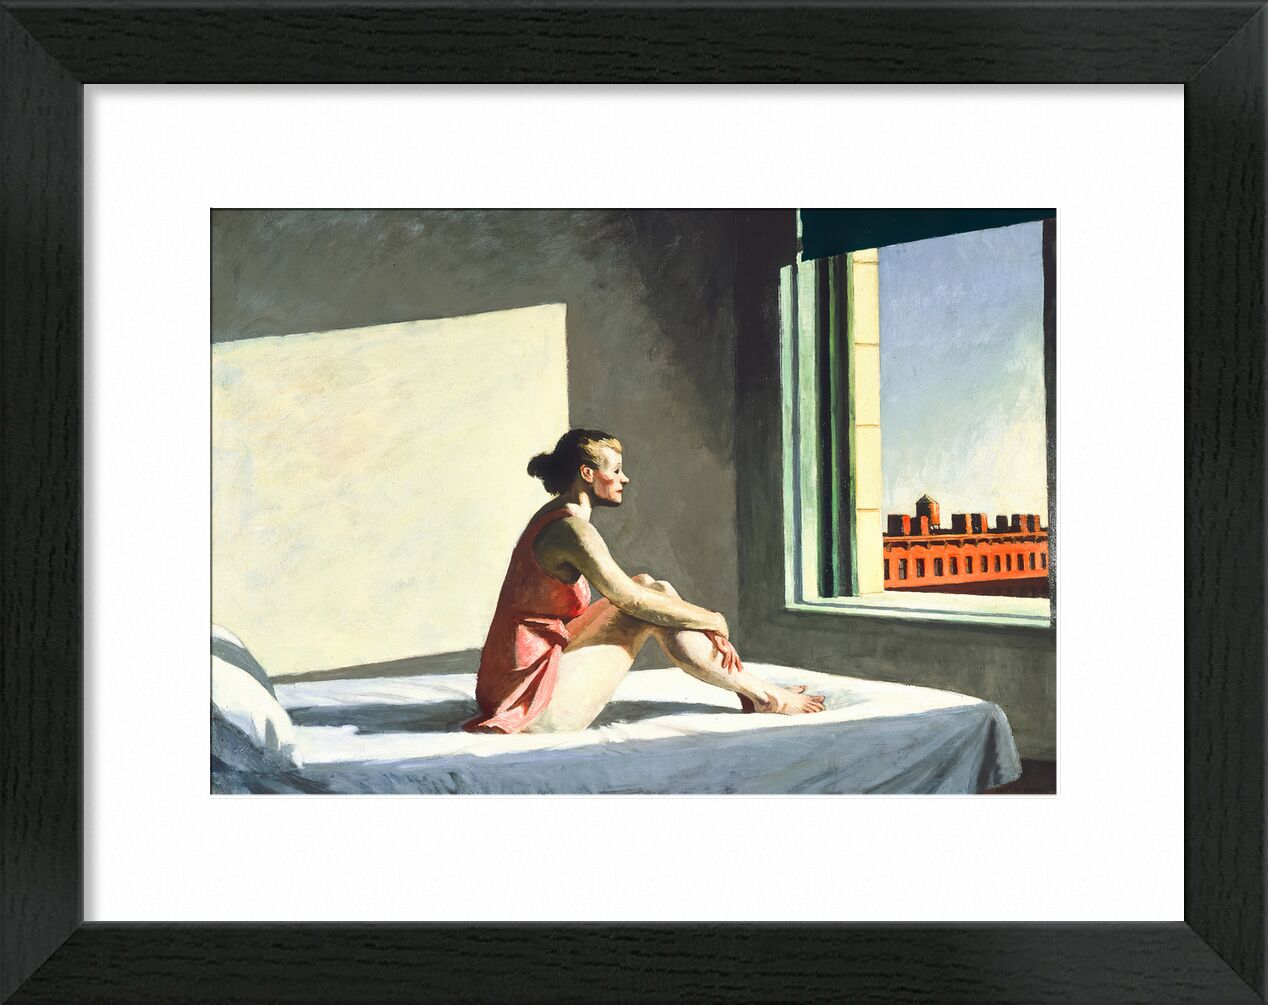 Sol de la Mañana - Edward Hopper desde Bellas artes, Prodi Art, tolva, Estados Unidos, ciudad, cama, habitación, pintura, mujer